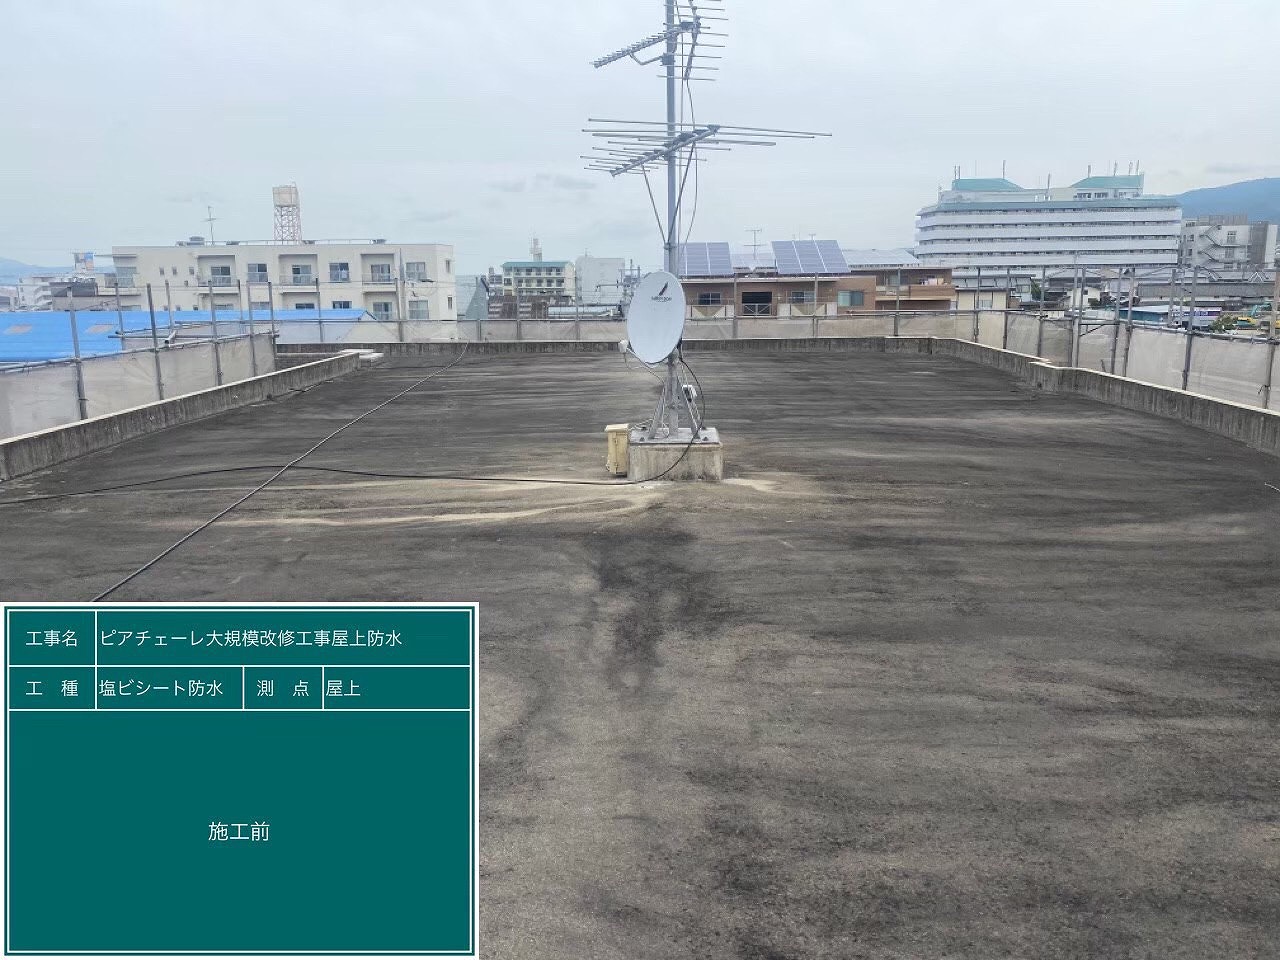 桜井市でマンション屋上の機械固定工法での 塩化ビニル樹脂系シート防水工事